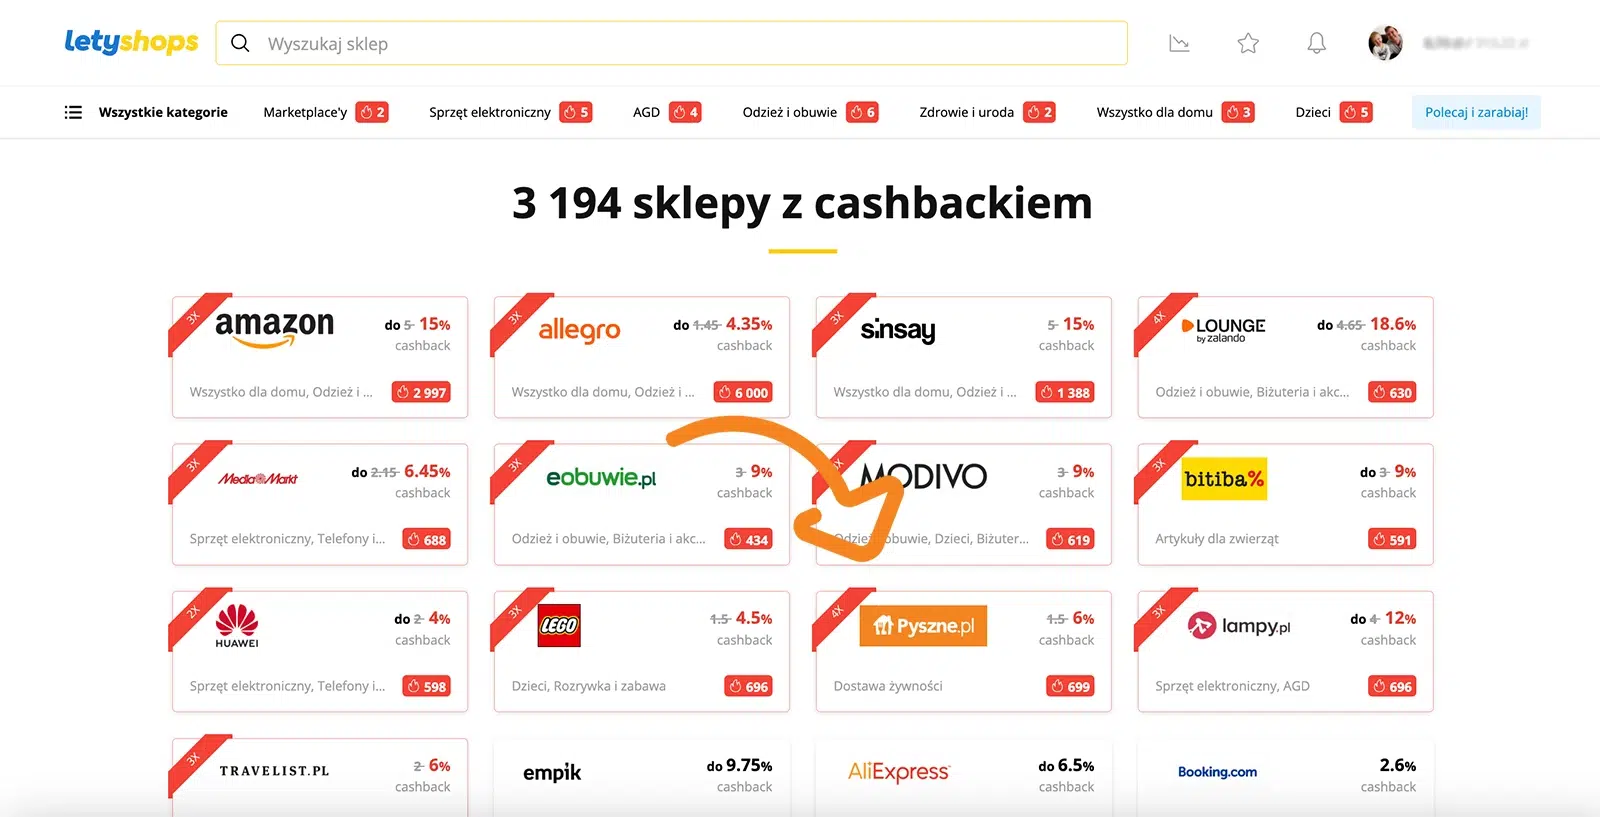 Zwiększony cashback do Pyszne.pl na stronie Letyshops